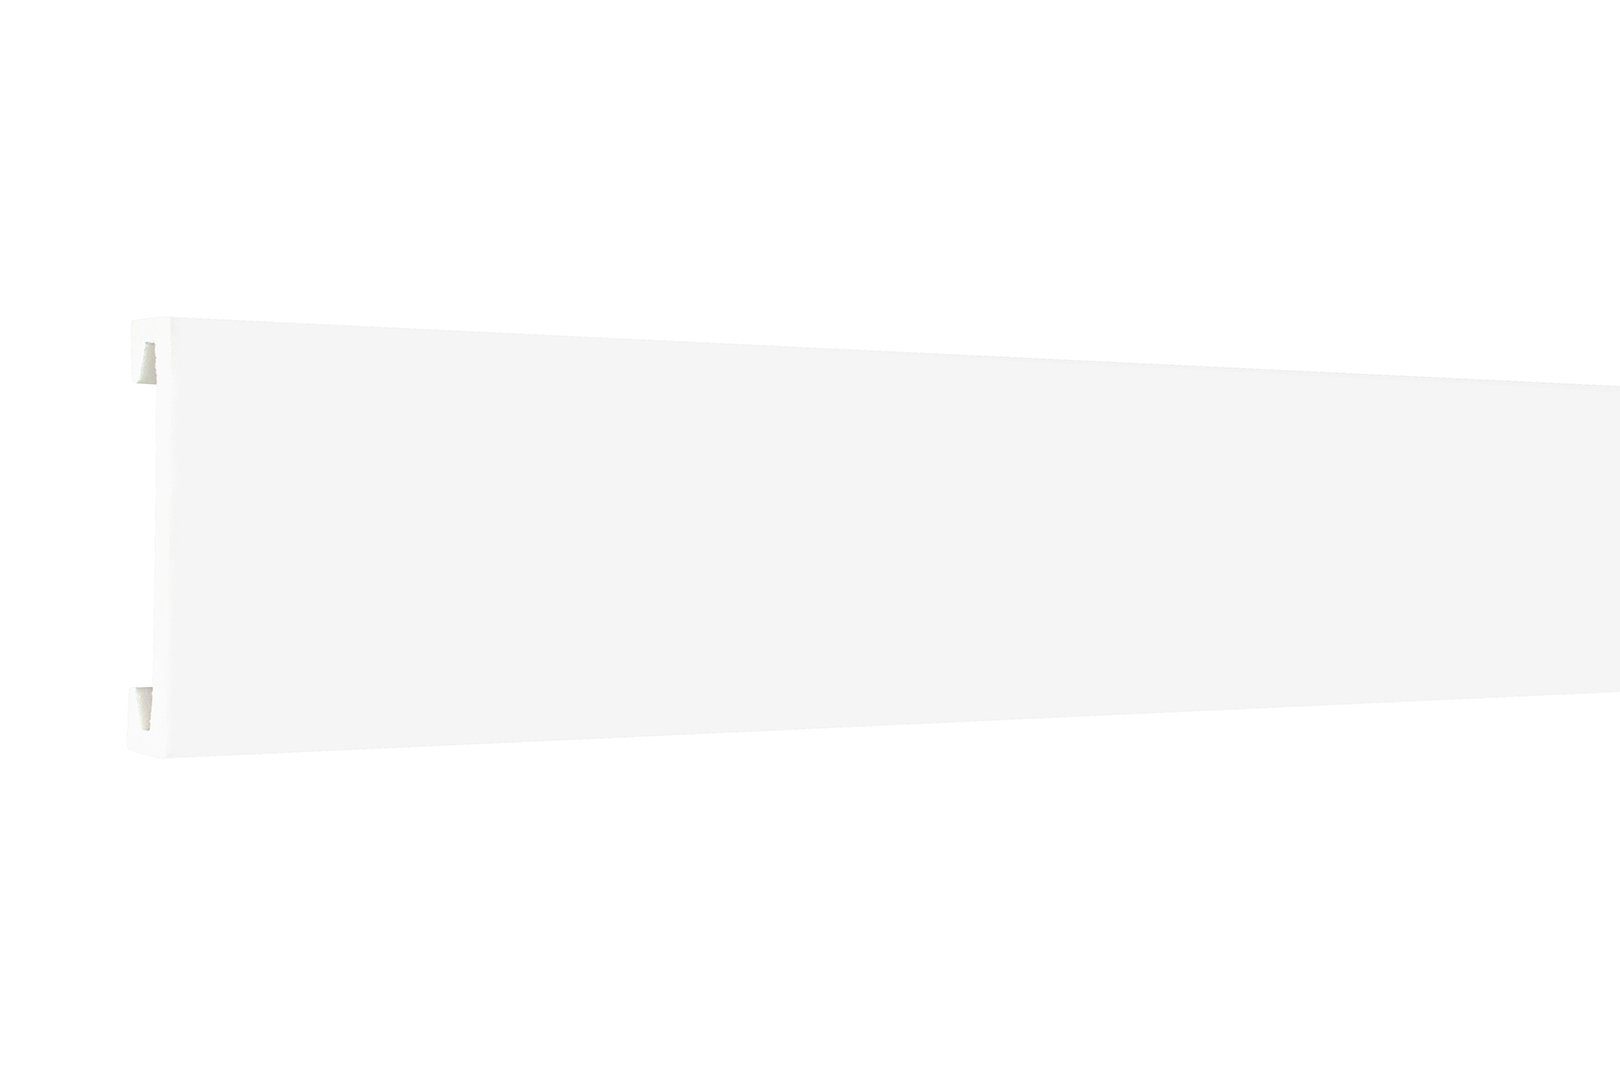 Hexim Stuckleiste HCR506, 2 Meter / 1 Leiste, Stuckleisten aus HDPS Styropor - extrem widerstandsfähig, schneeweiß & modern (2 Meter / 1 Leiste) Profil Fries Rahmen Gestaltung Wandvertäfelung HDPS HCR506 - 70 x 12 mm